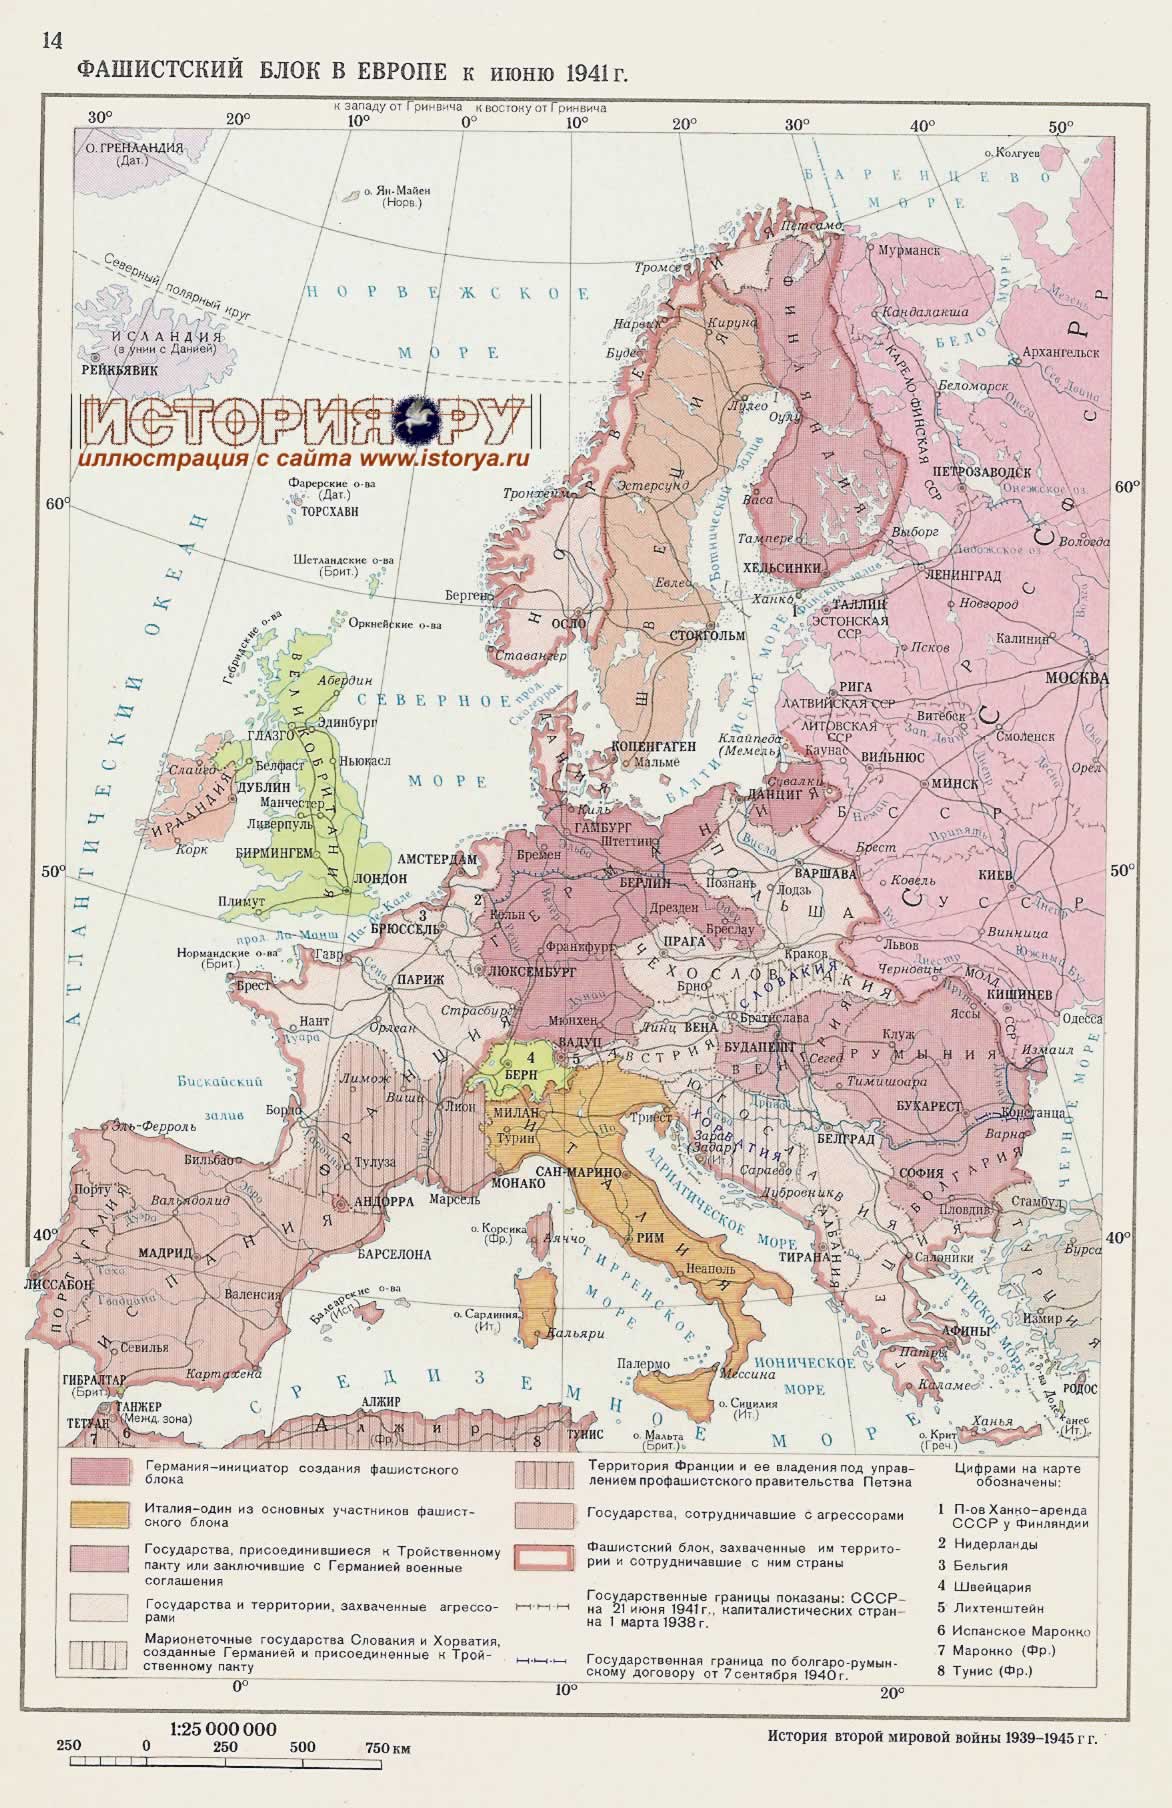 Фашистский блок в Европе к июню 1941г.